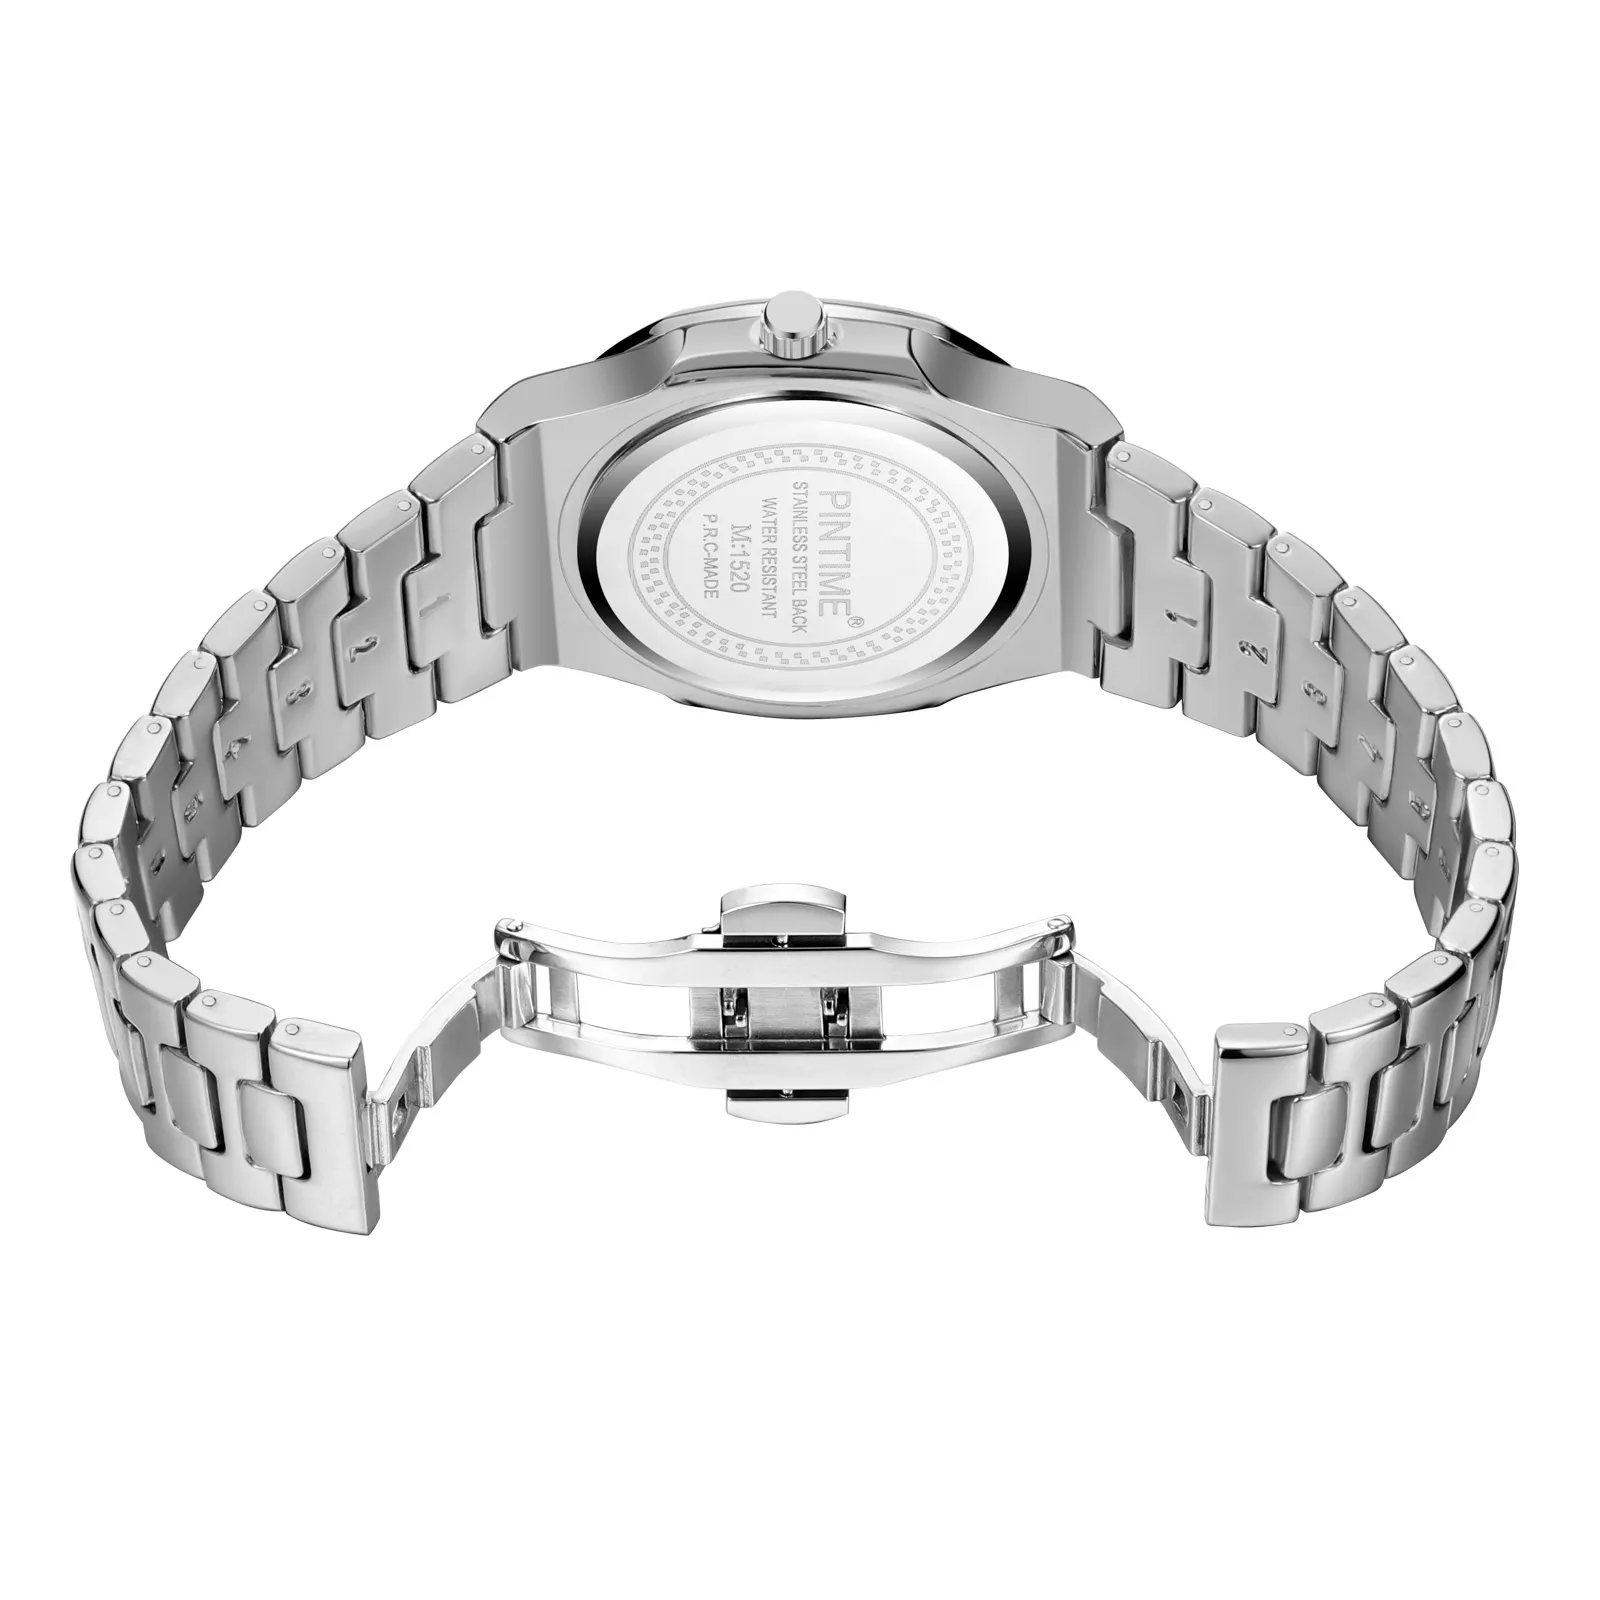 Pintime 2020 Mens Saatler En İyi Marka Lüks Altın Çelik İş Saati Erkekler Su Geçirmez Spor Saati Relogio Maskulino Reloj hombre272b